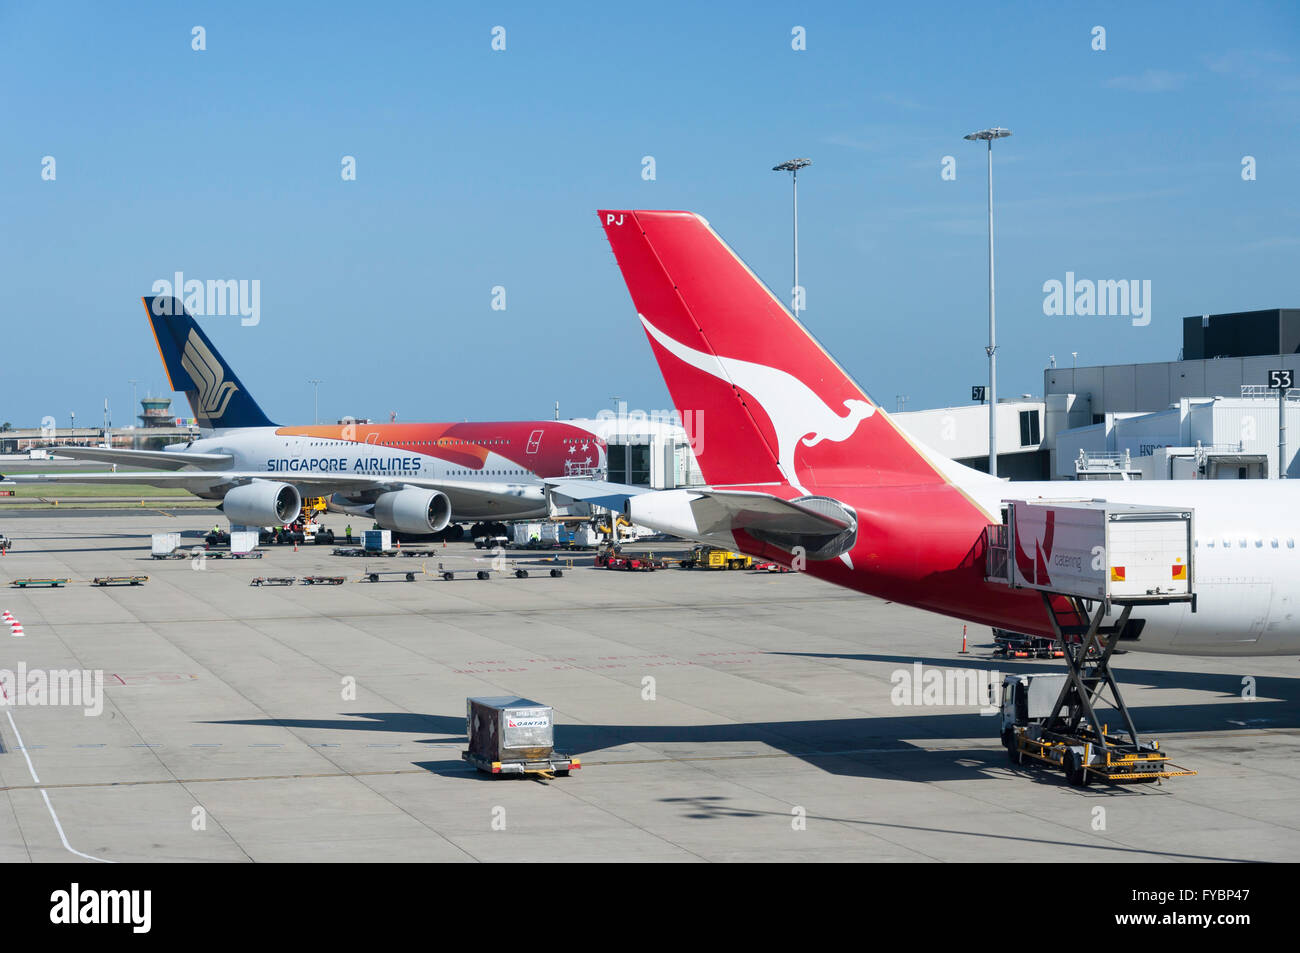 Qantas und Singapore Airlines Flugzeuge am Flughafen Sydney Kingsford Smith, Maskottchen, Sydney, New South Wales, Australien Stockfoto